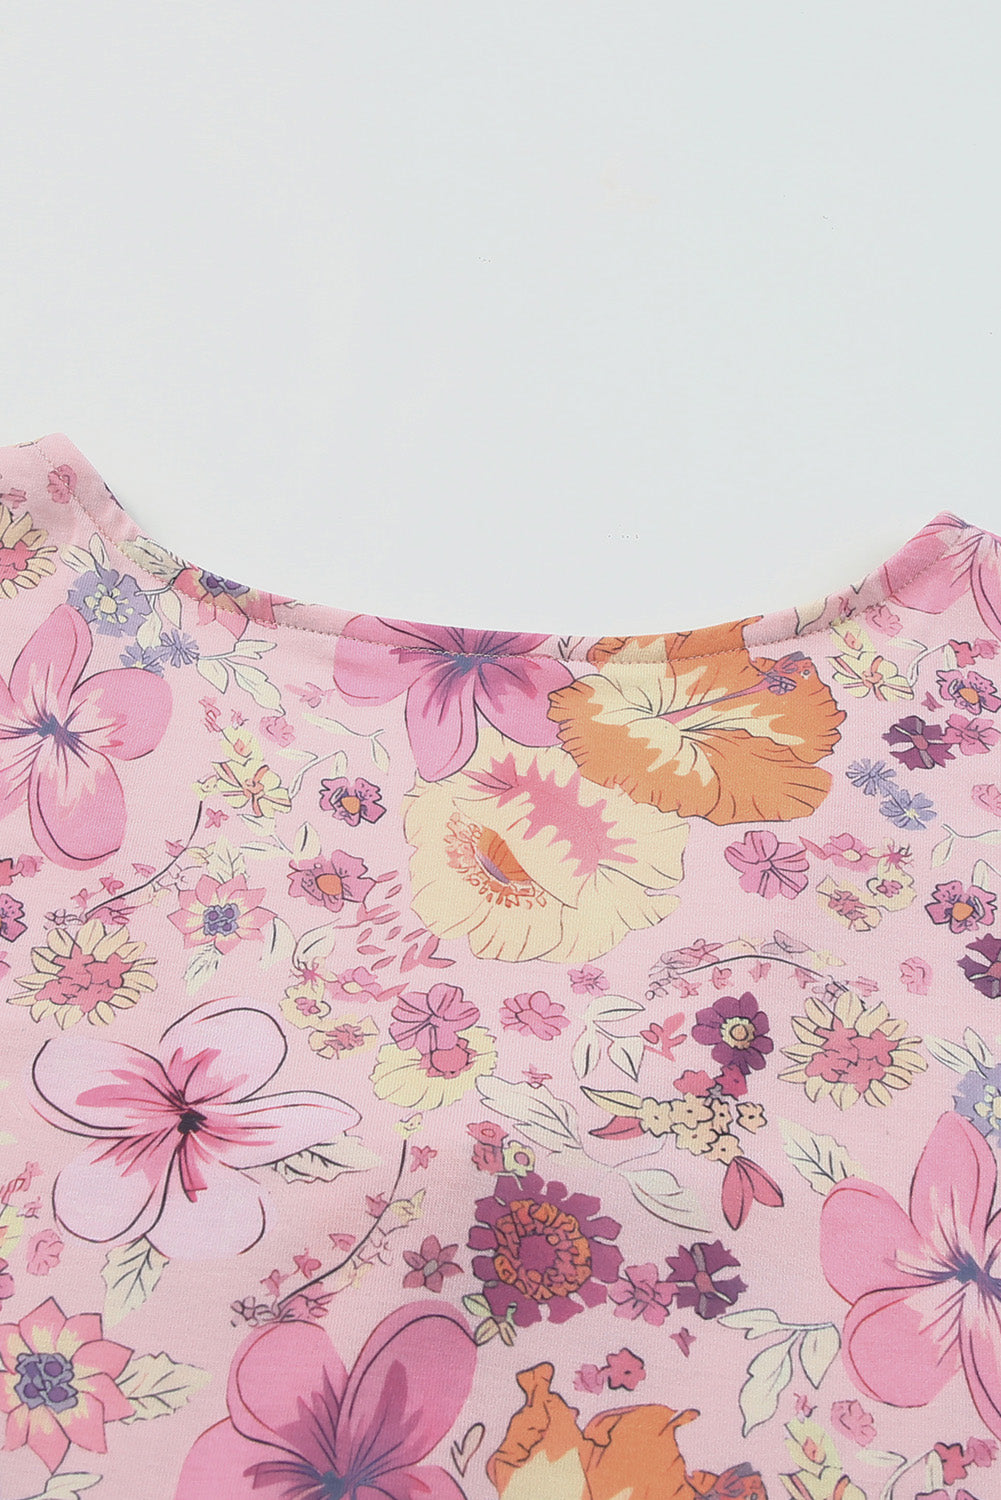 Večbarvna mini obleka s cvetličnim vzorcem hibiskusa in naborki